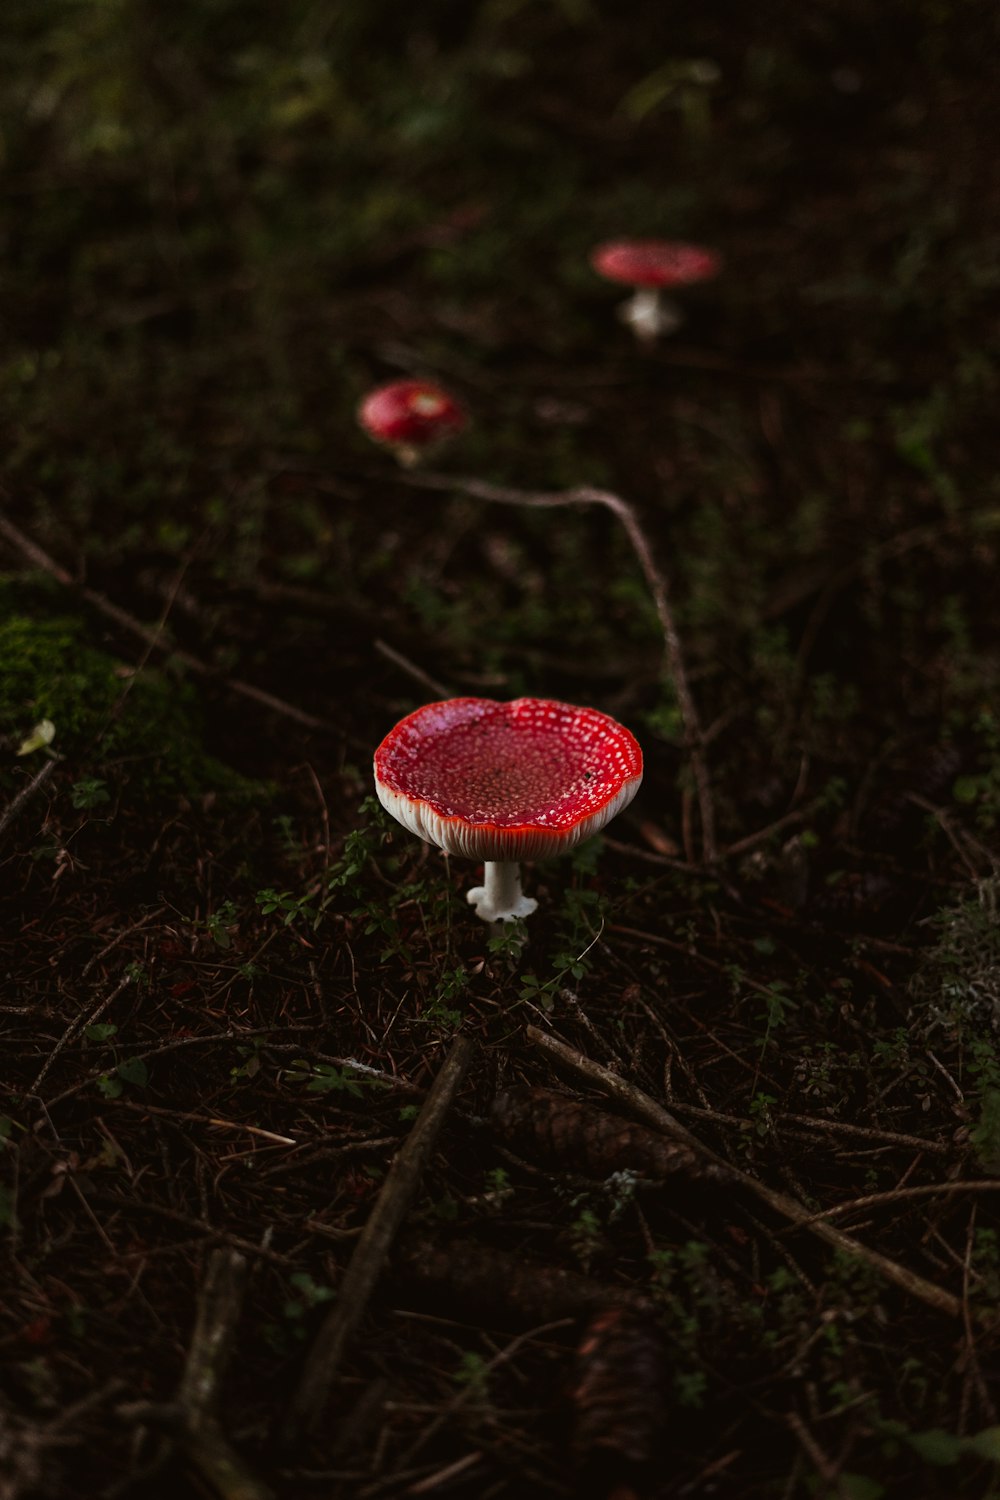 fungo rosso e bianco in fotografia ravvicinata